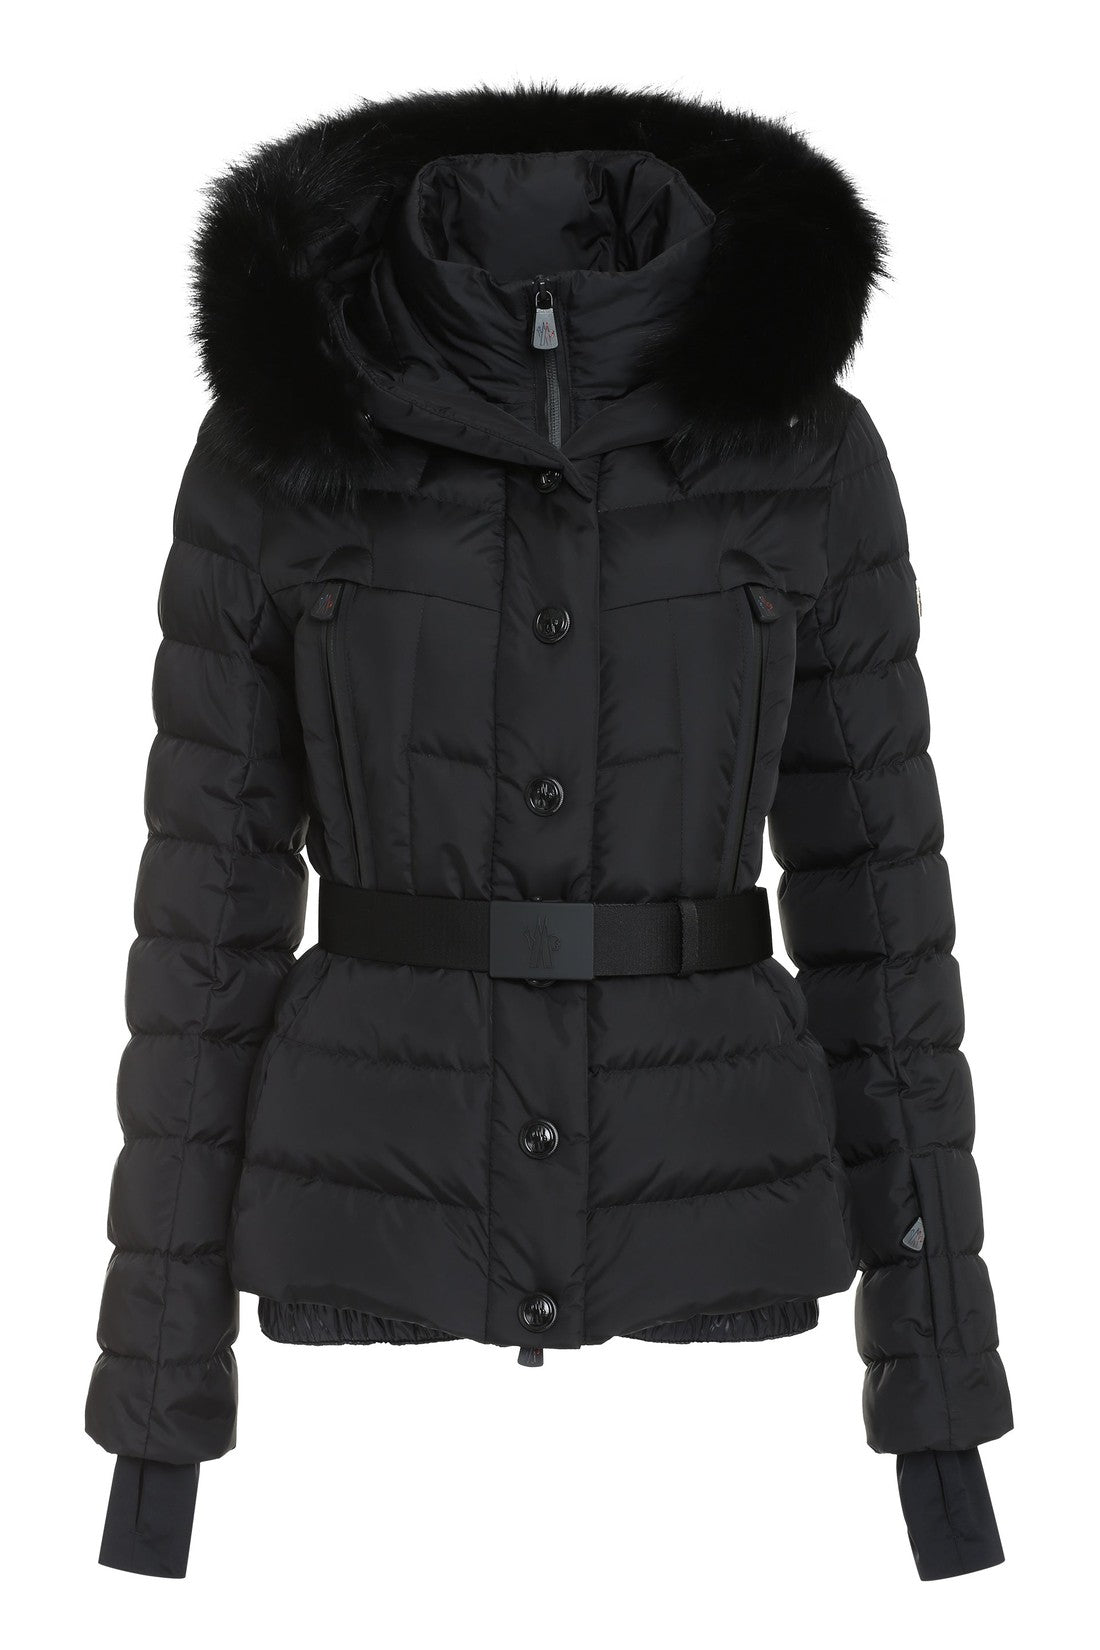 Moncler Grenoble-OUTLET-SALE-Beverley fur hood down jacket-ARCHIVIST